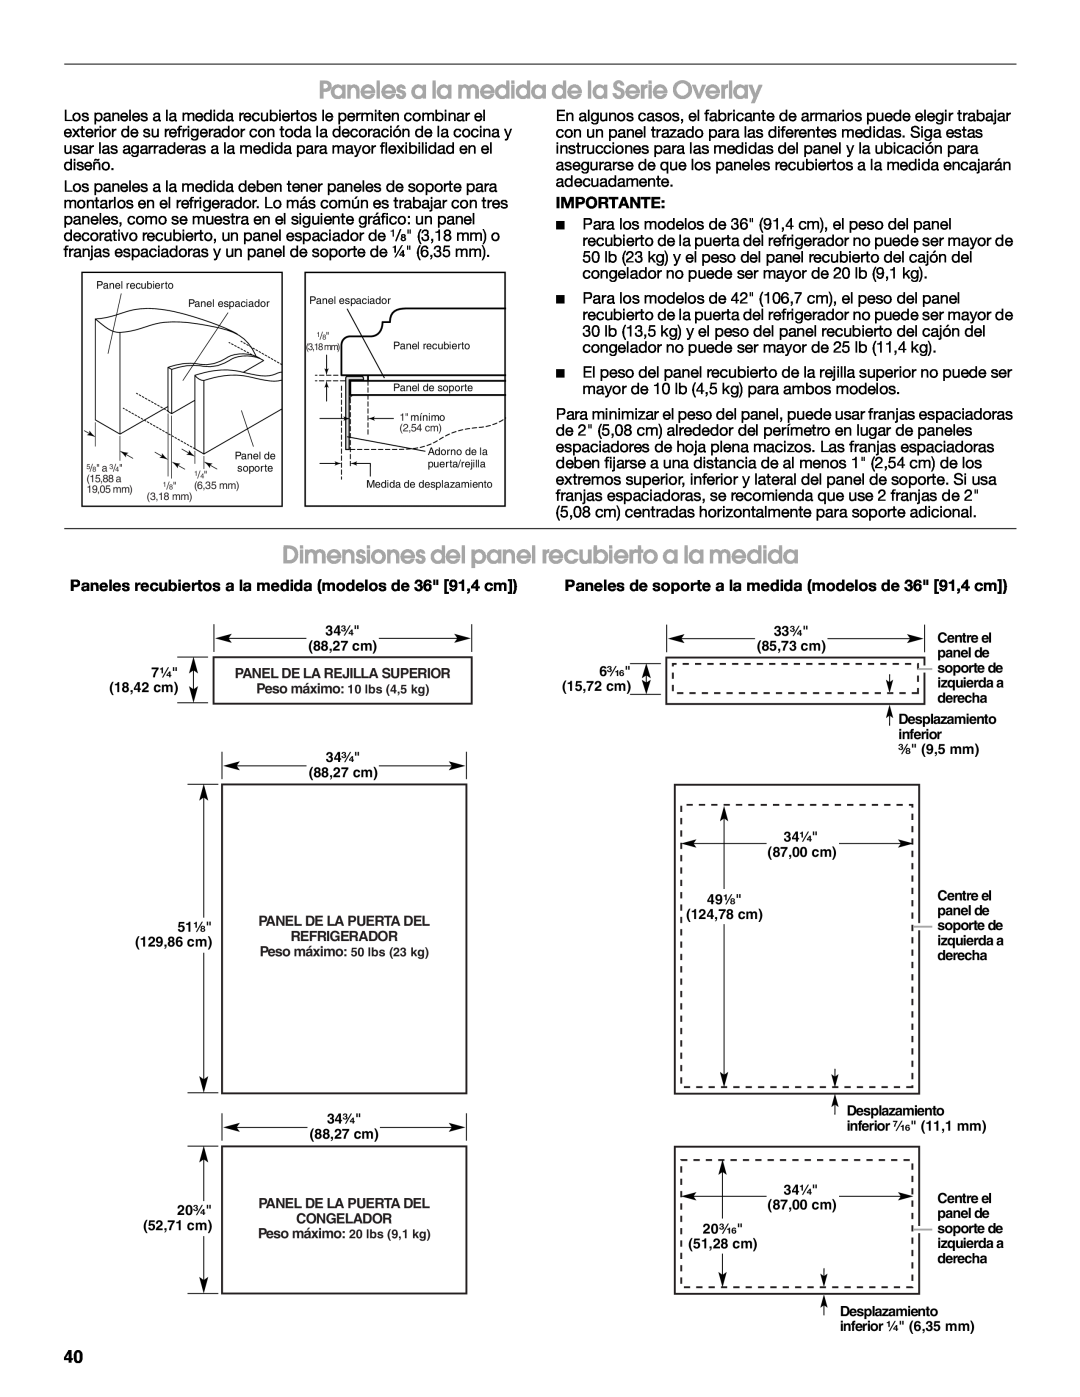 Jenn-Air W10183782A Paneles a la medida de la Serie Overlay, Dimensiones del panel recubierto a la medida, Importante 